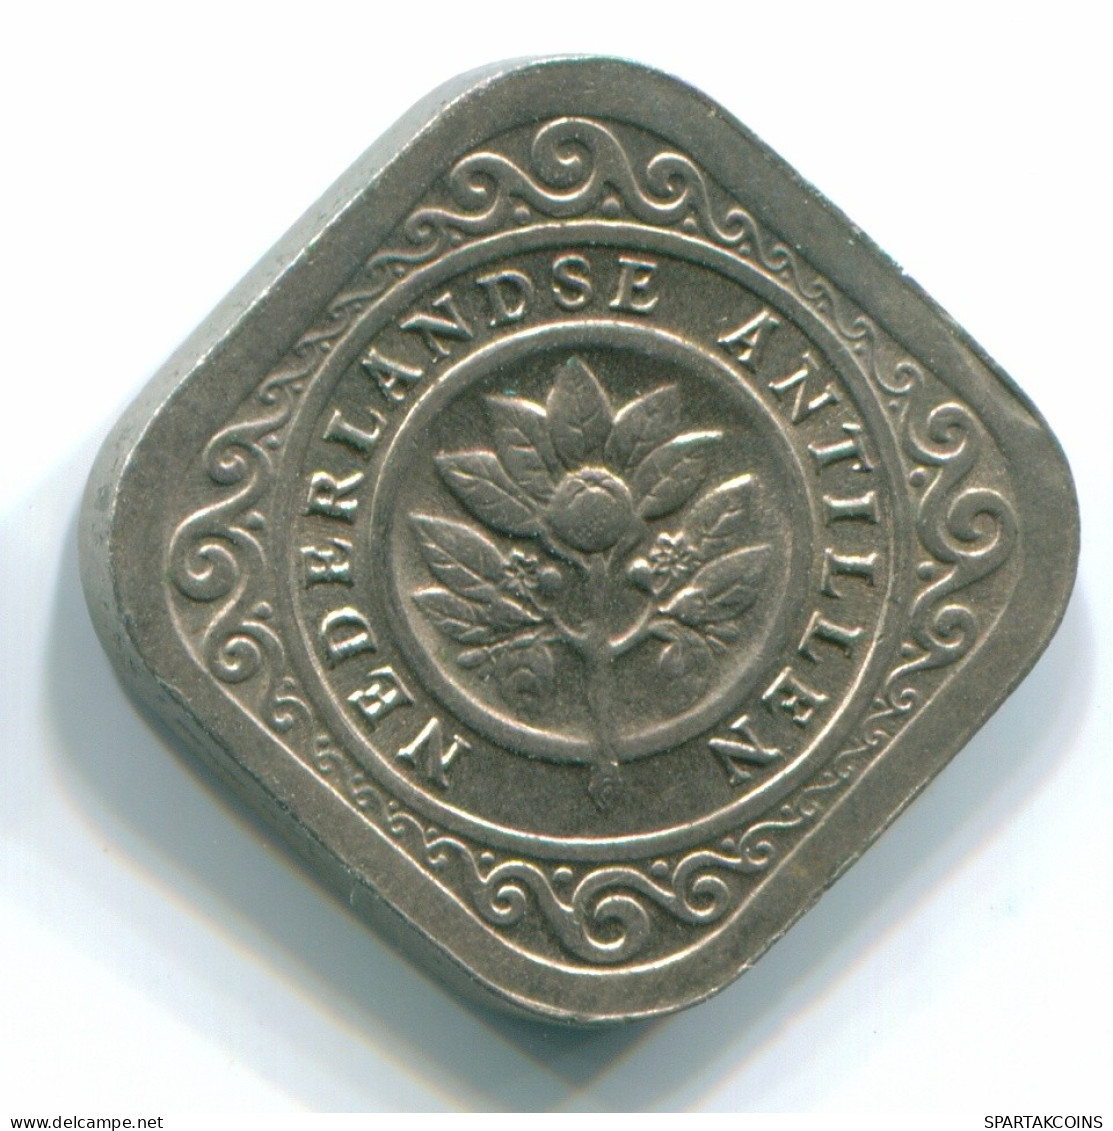 5 CENTS 1970 NETHERLANDS ANTILLES Nickel Colonial Coin #S12489.U.A - Niederländische Antillen